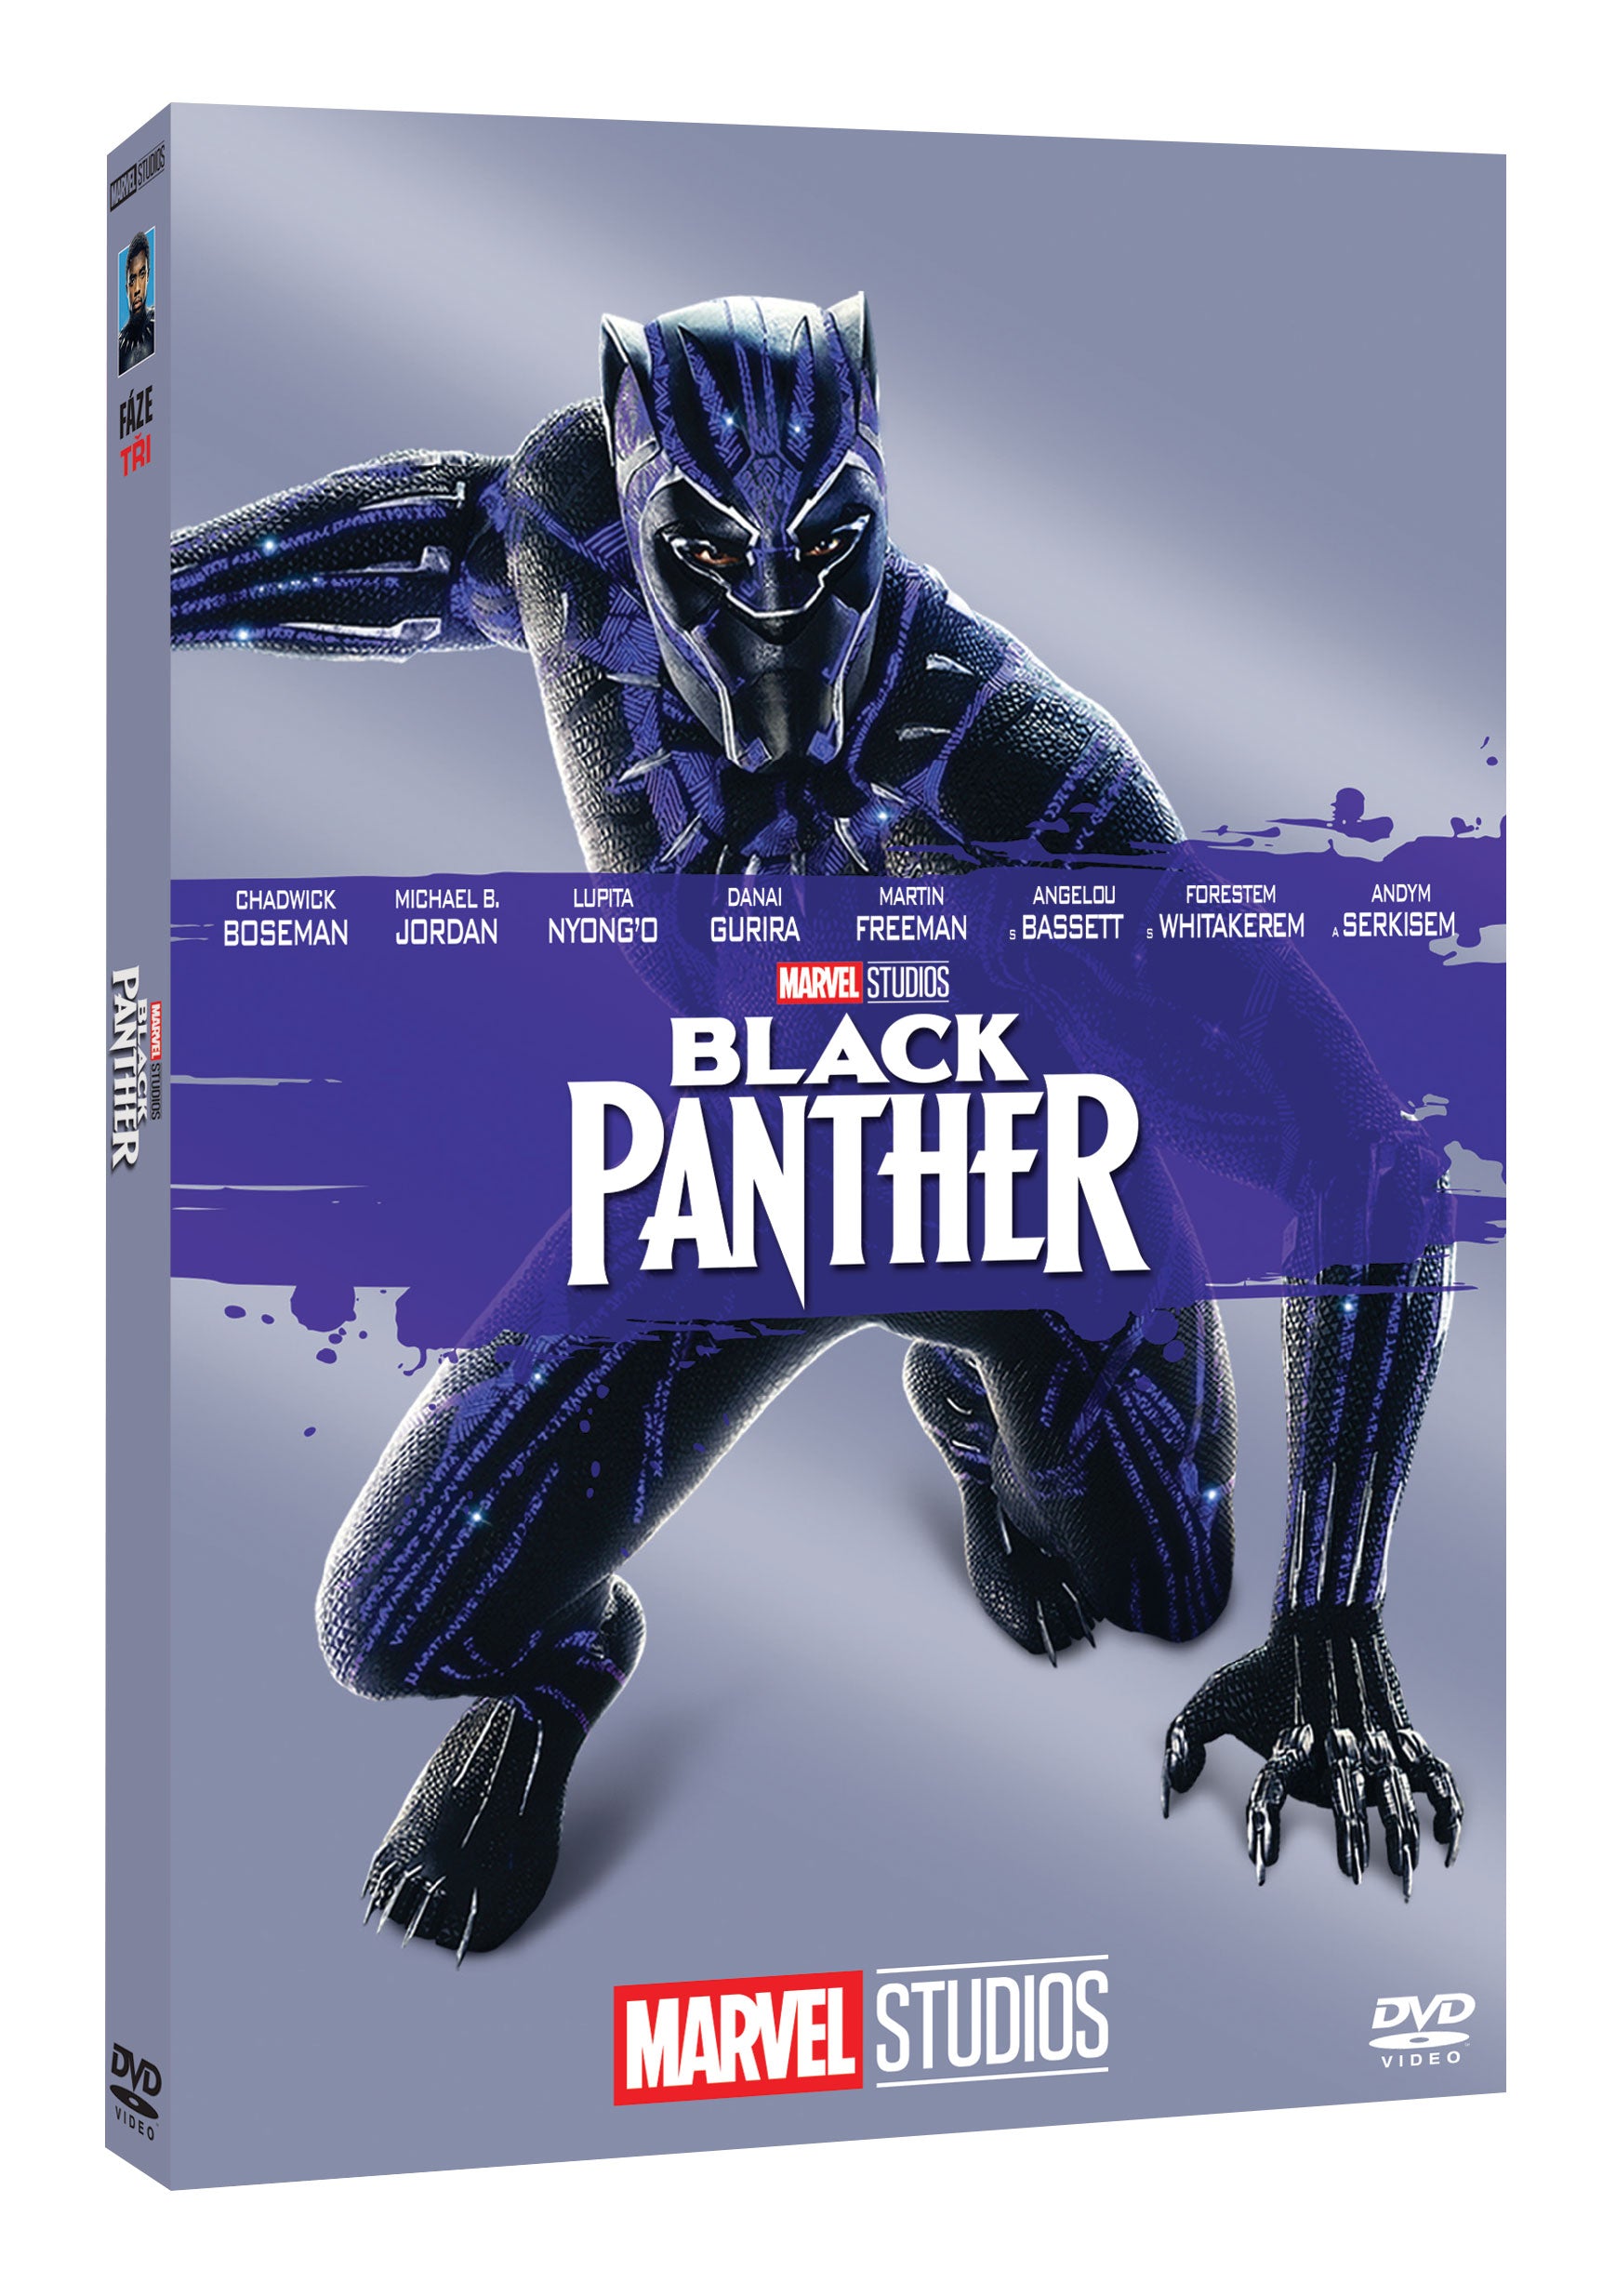 Black Panther DVD - Edice Marvel 10 let / Black Panther